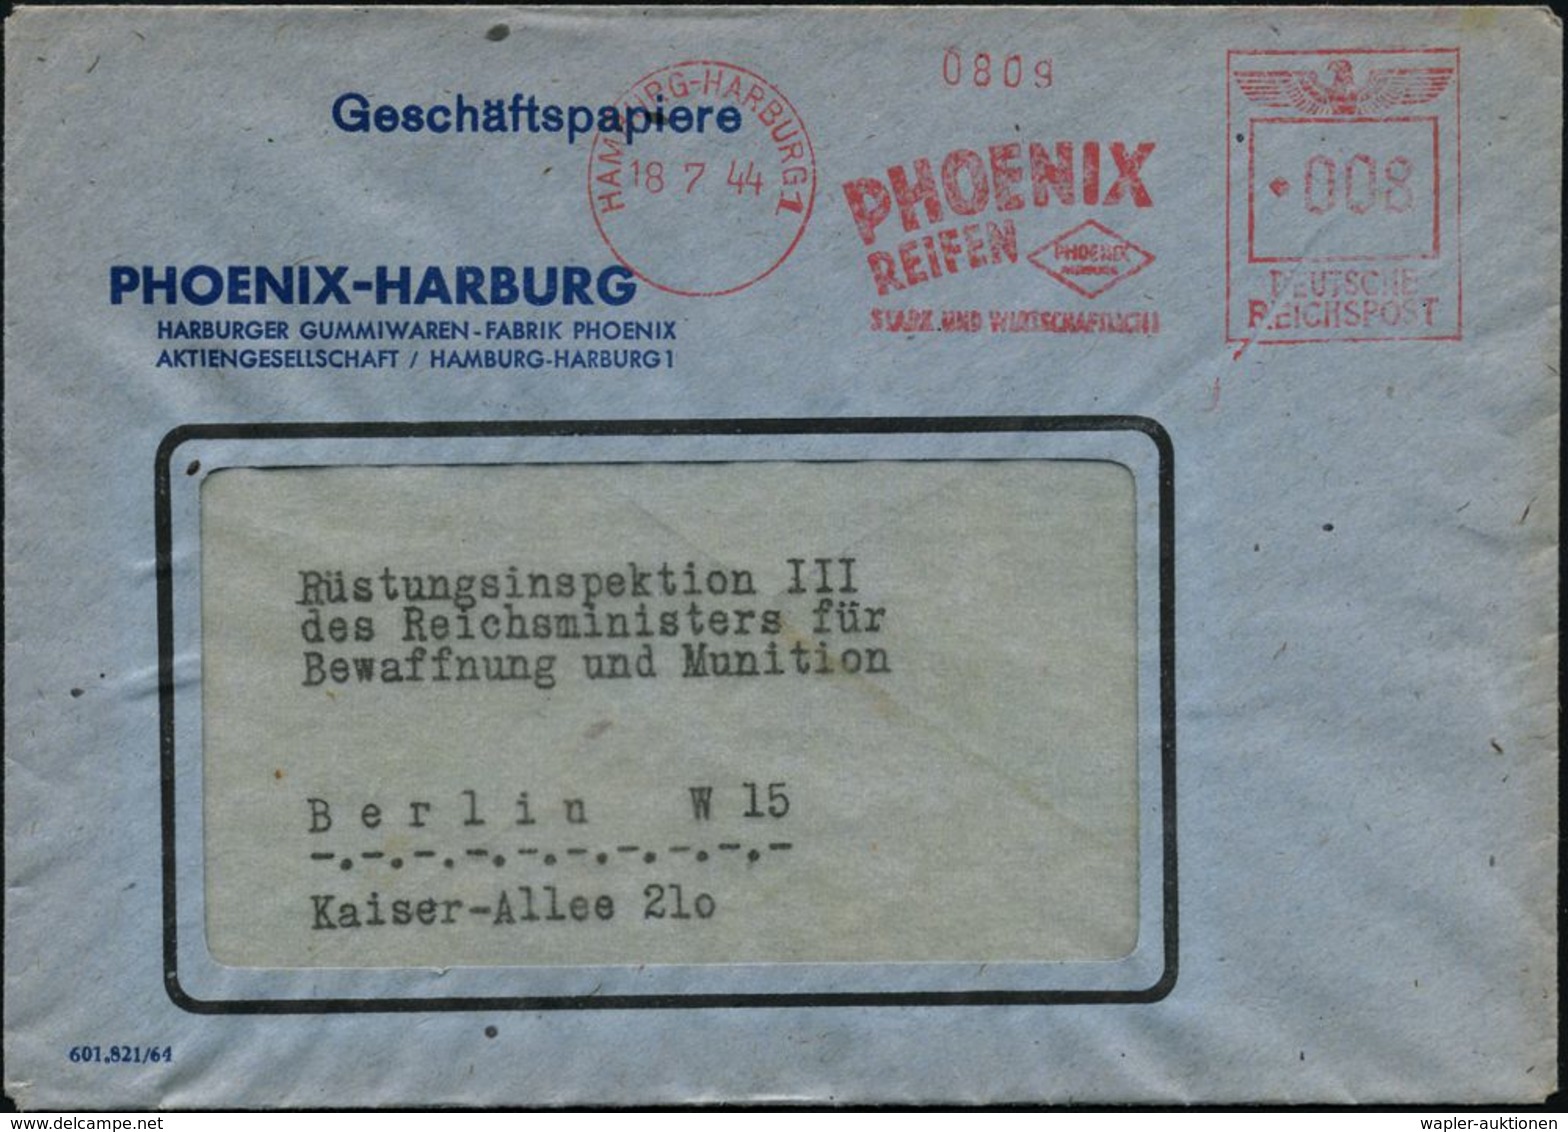 GUMMI / KAUTSCHUK : HAMBURG-HARBURG 1/ PHOENIX/ REIFEN../ STARK U.WIRTSCHAFTLICH 1944 (18.7.) Seltener AFS-Typ "Reichsad - Chimie